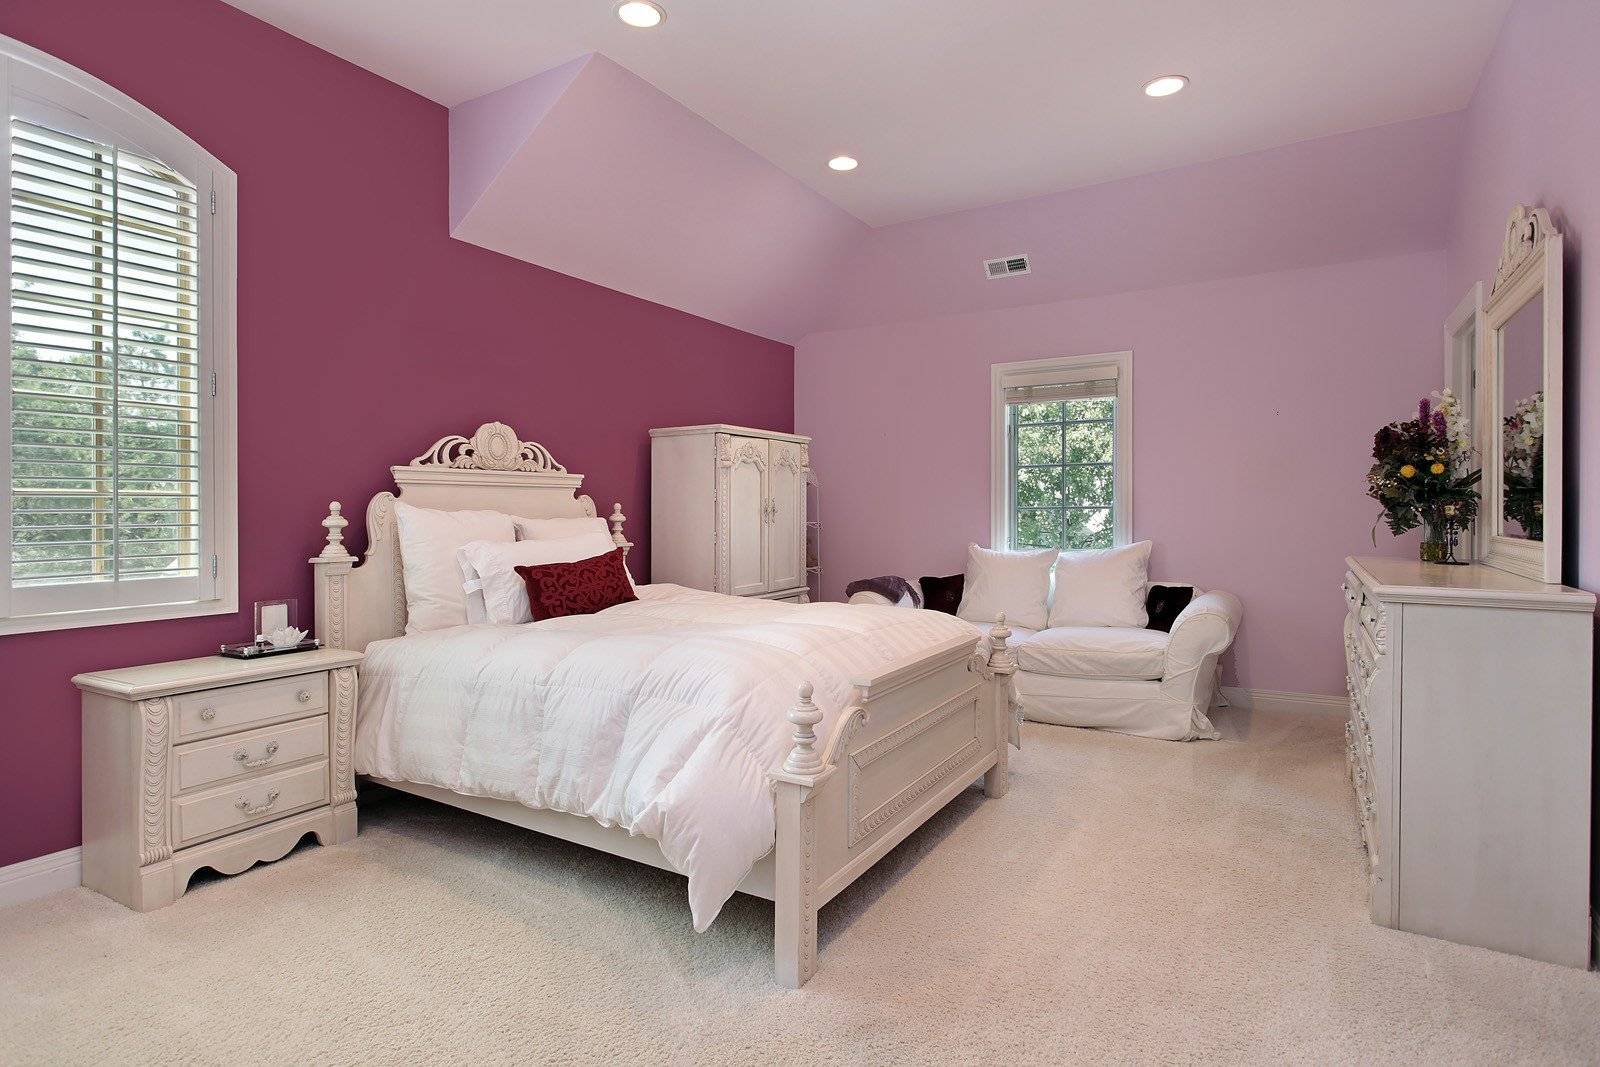 Цветовые решения в спальне, выбор лучшего цвета, удачные сочетания цветов в оформлении спальни по фен шуй.